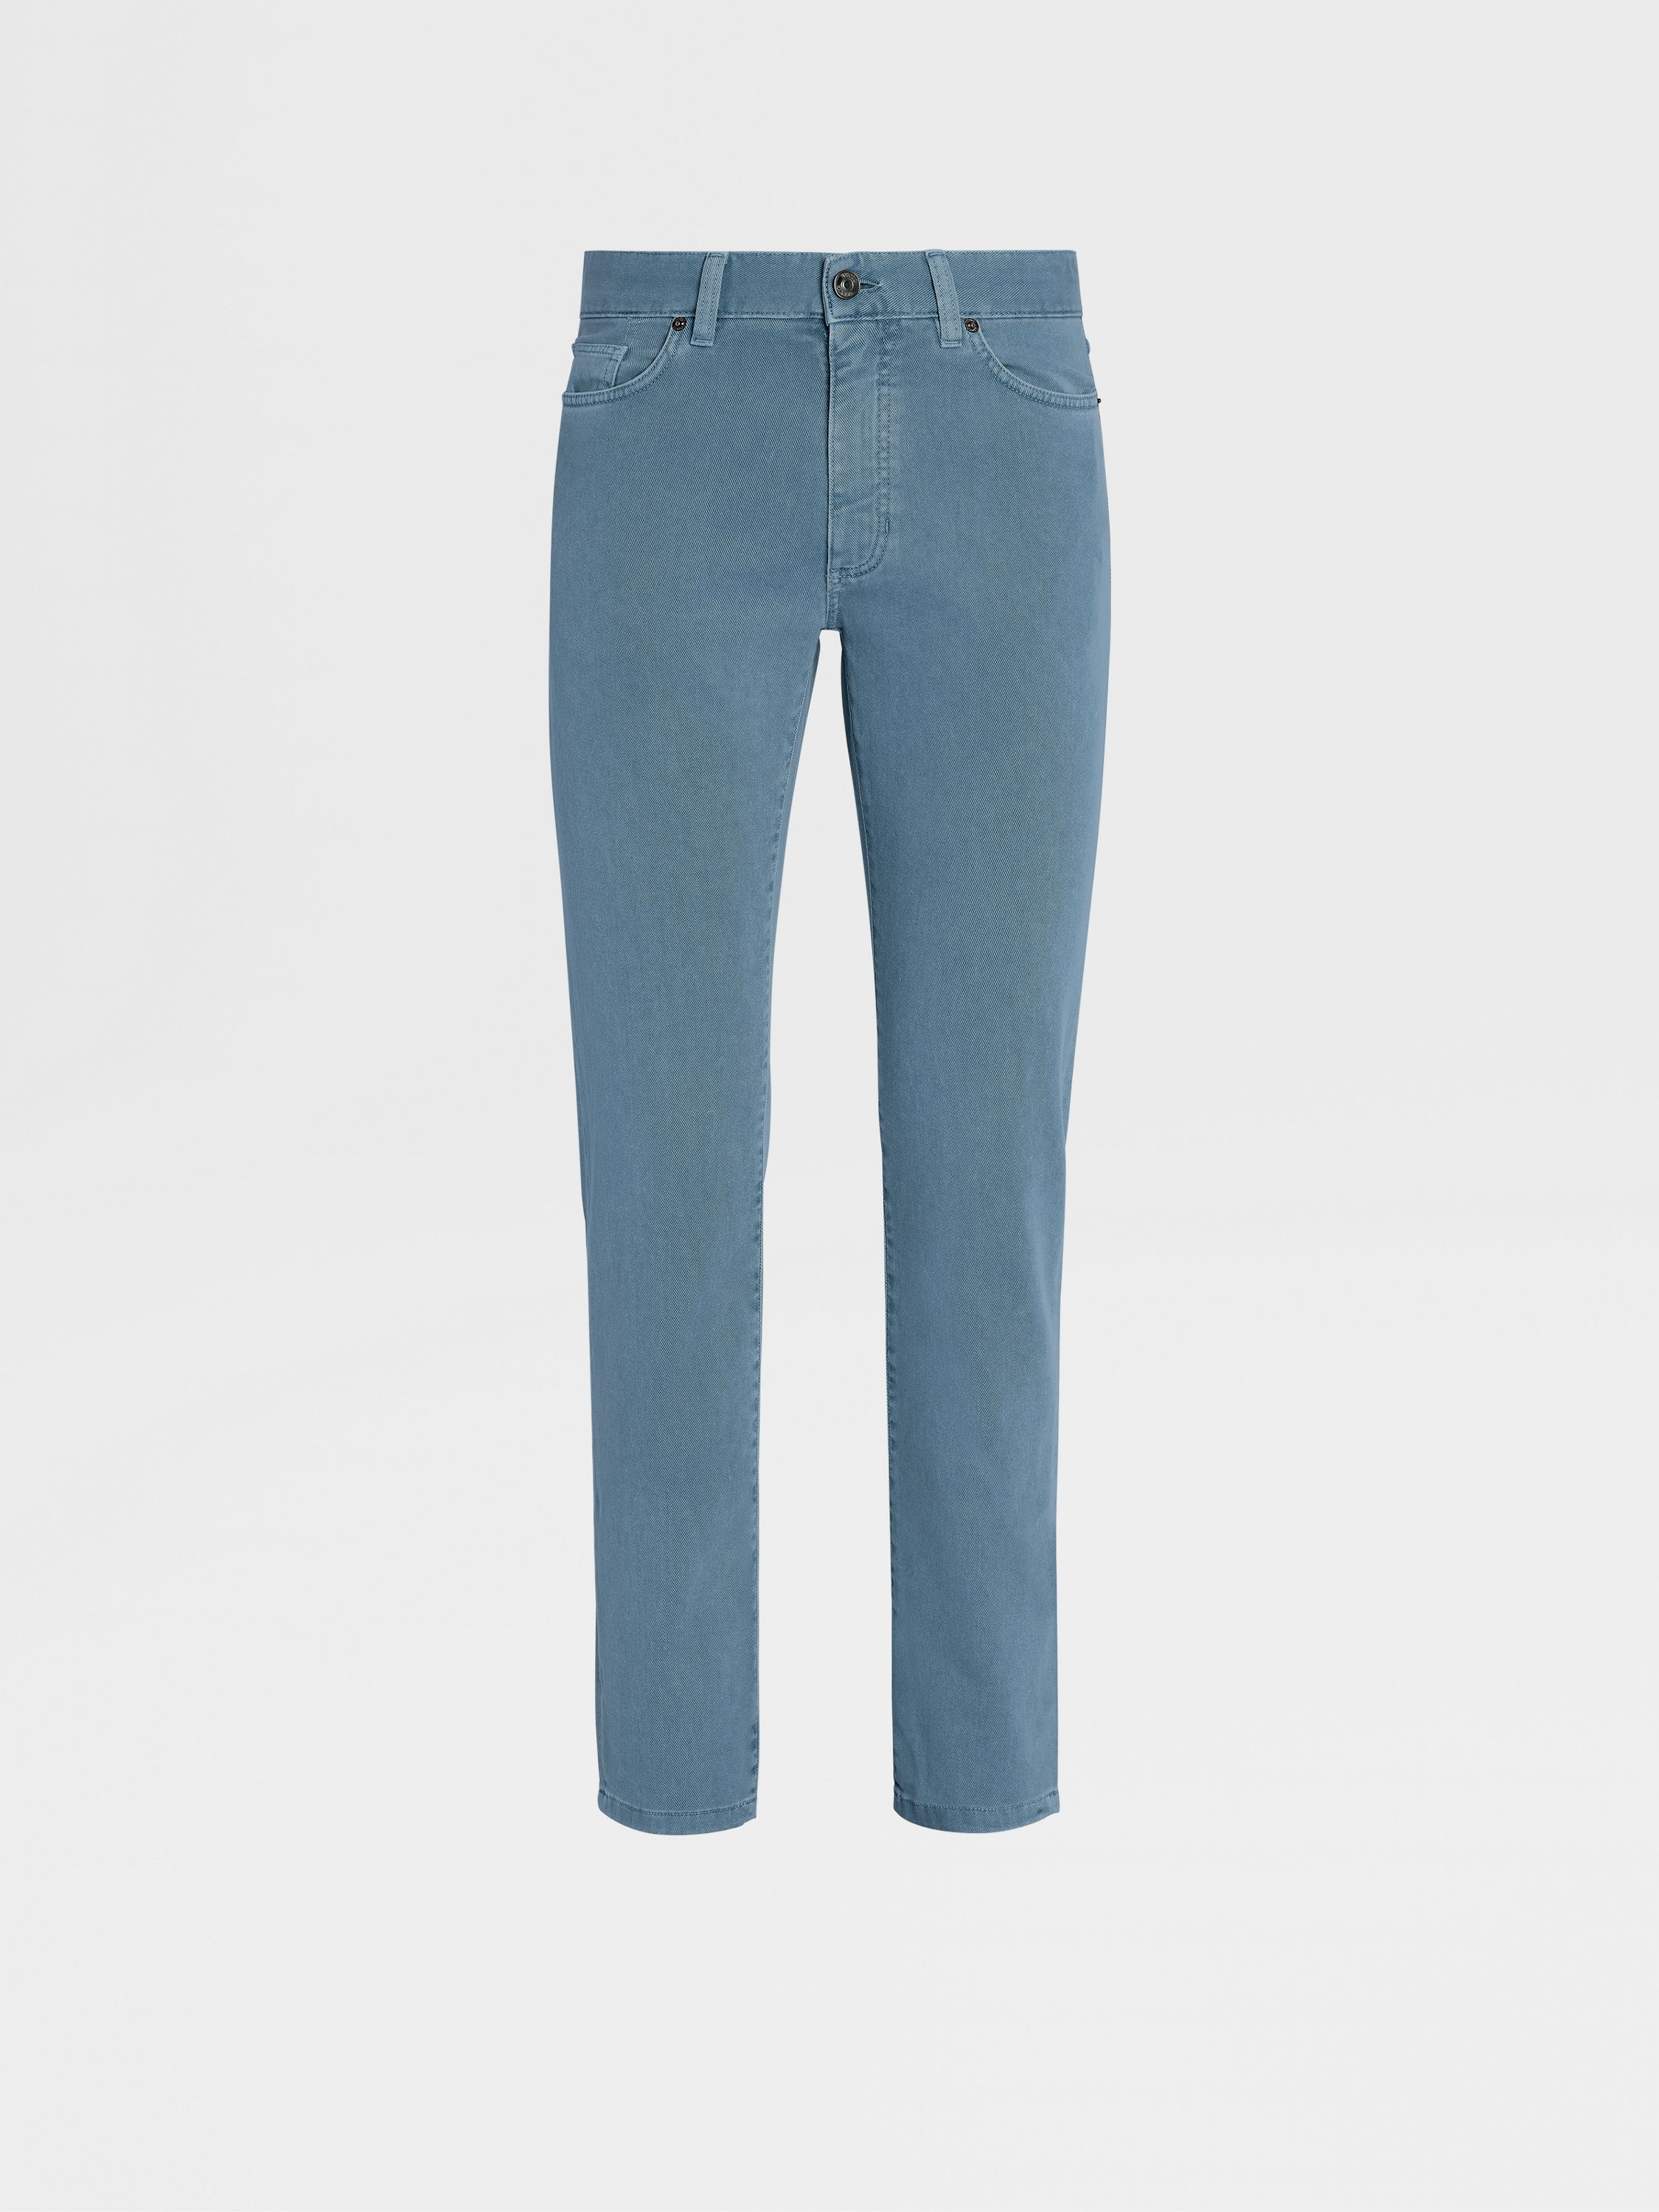 EIGHTYFIVE OPEN HEM - Relaxed fit jeans - ocean blue/blue denim